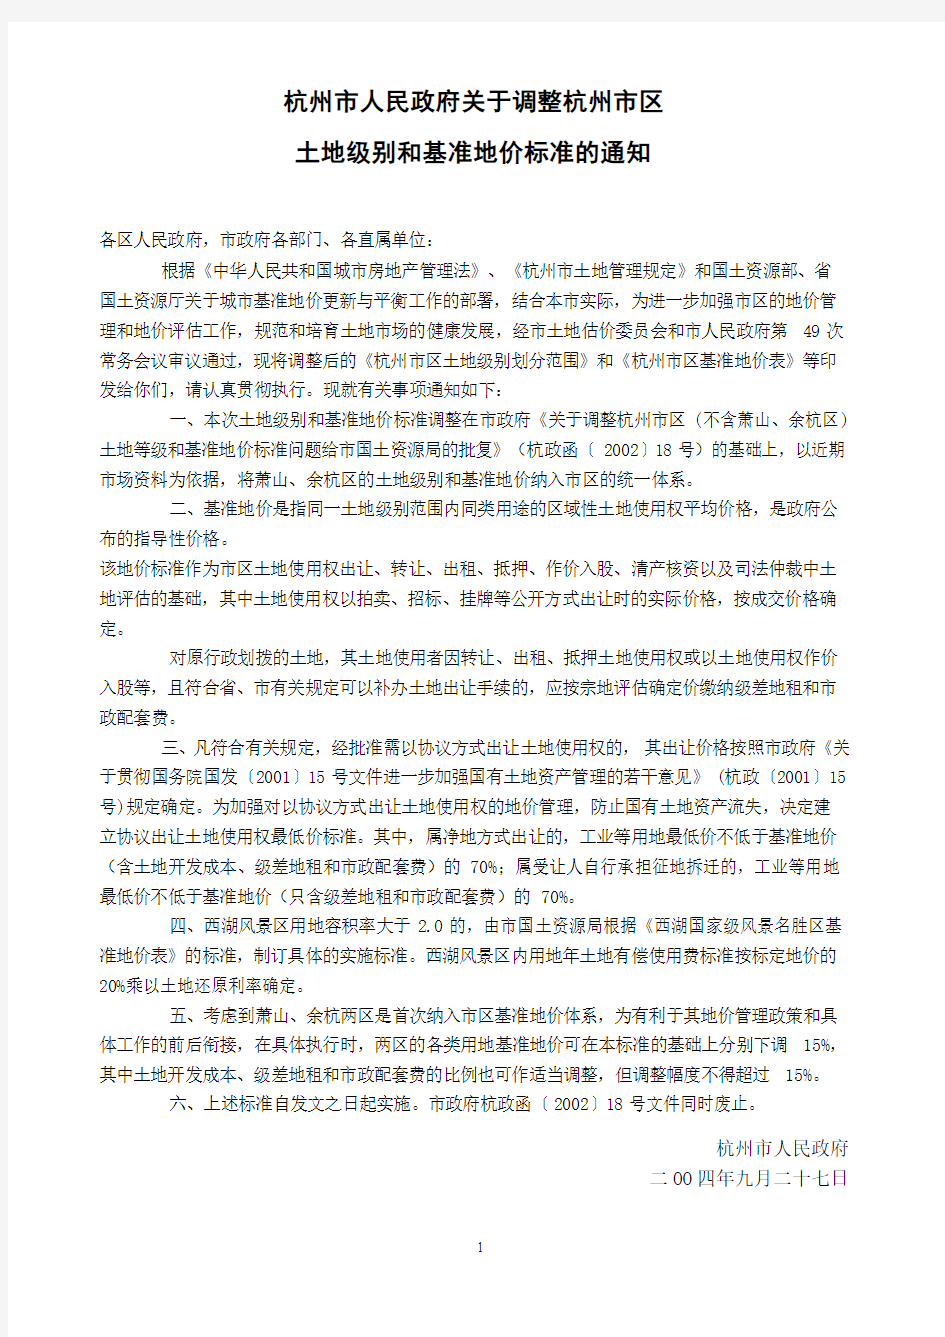 关于调整杭州市区土地级别和基准地价标准的通知